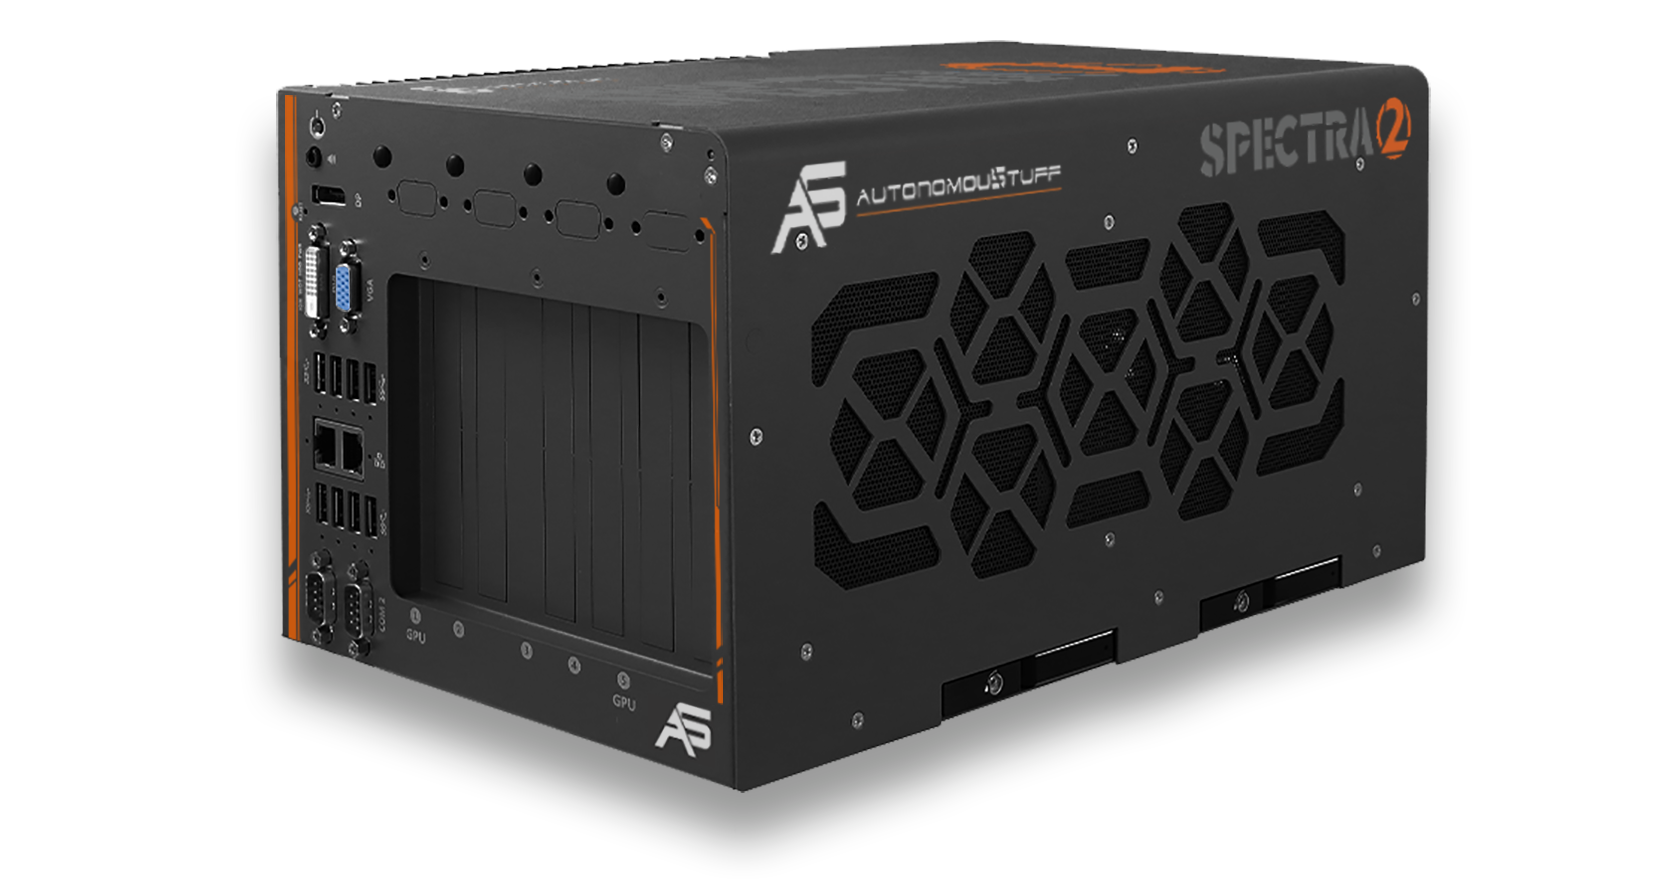 Autonomoustuff Spectra 2 product image